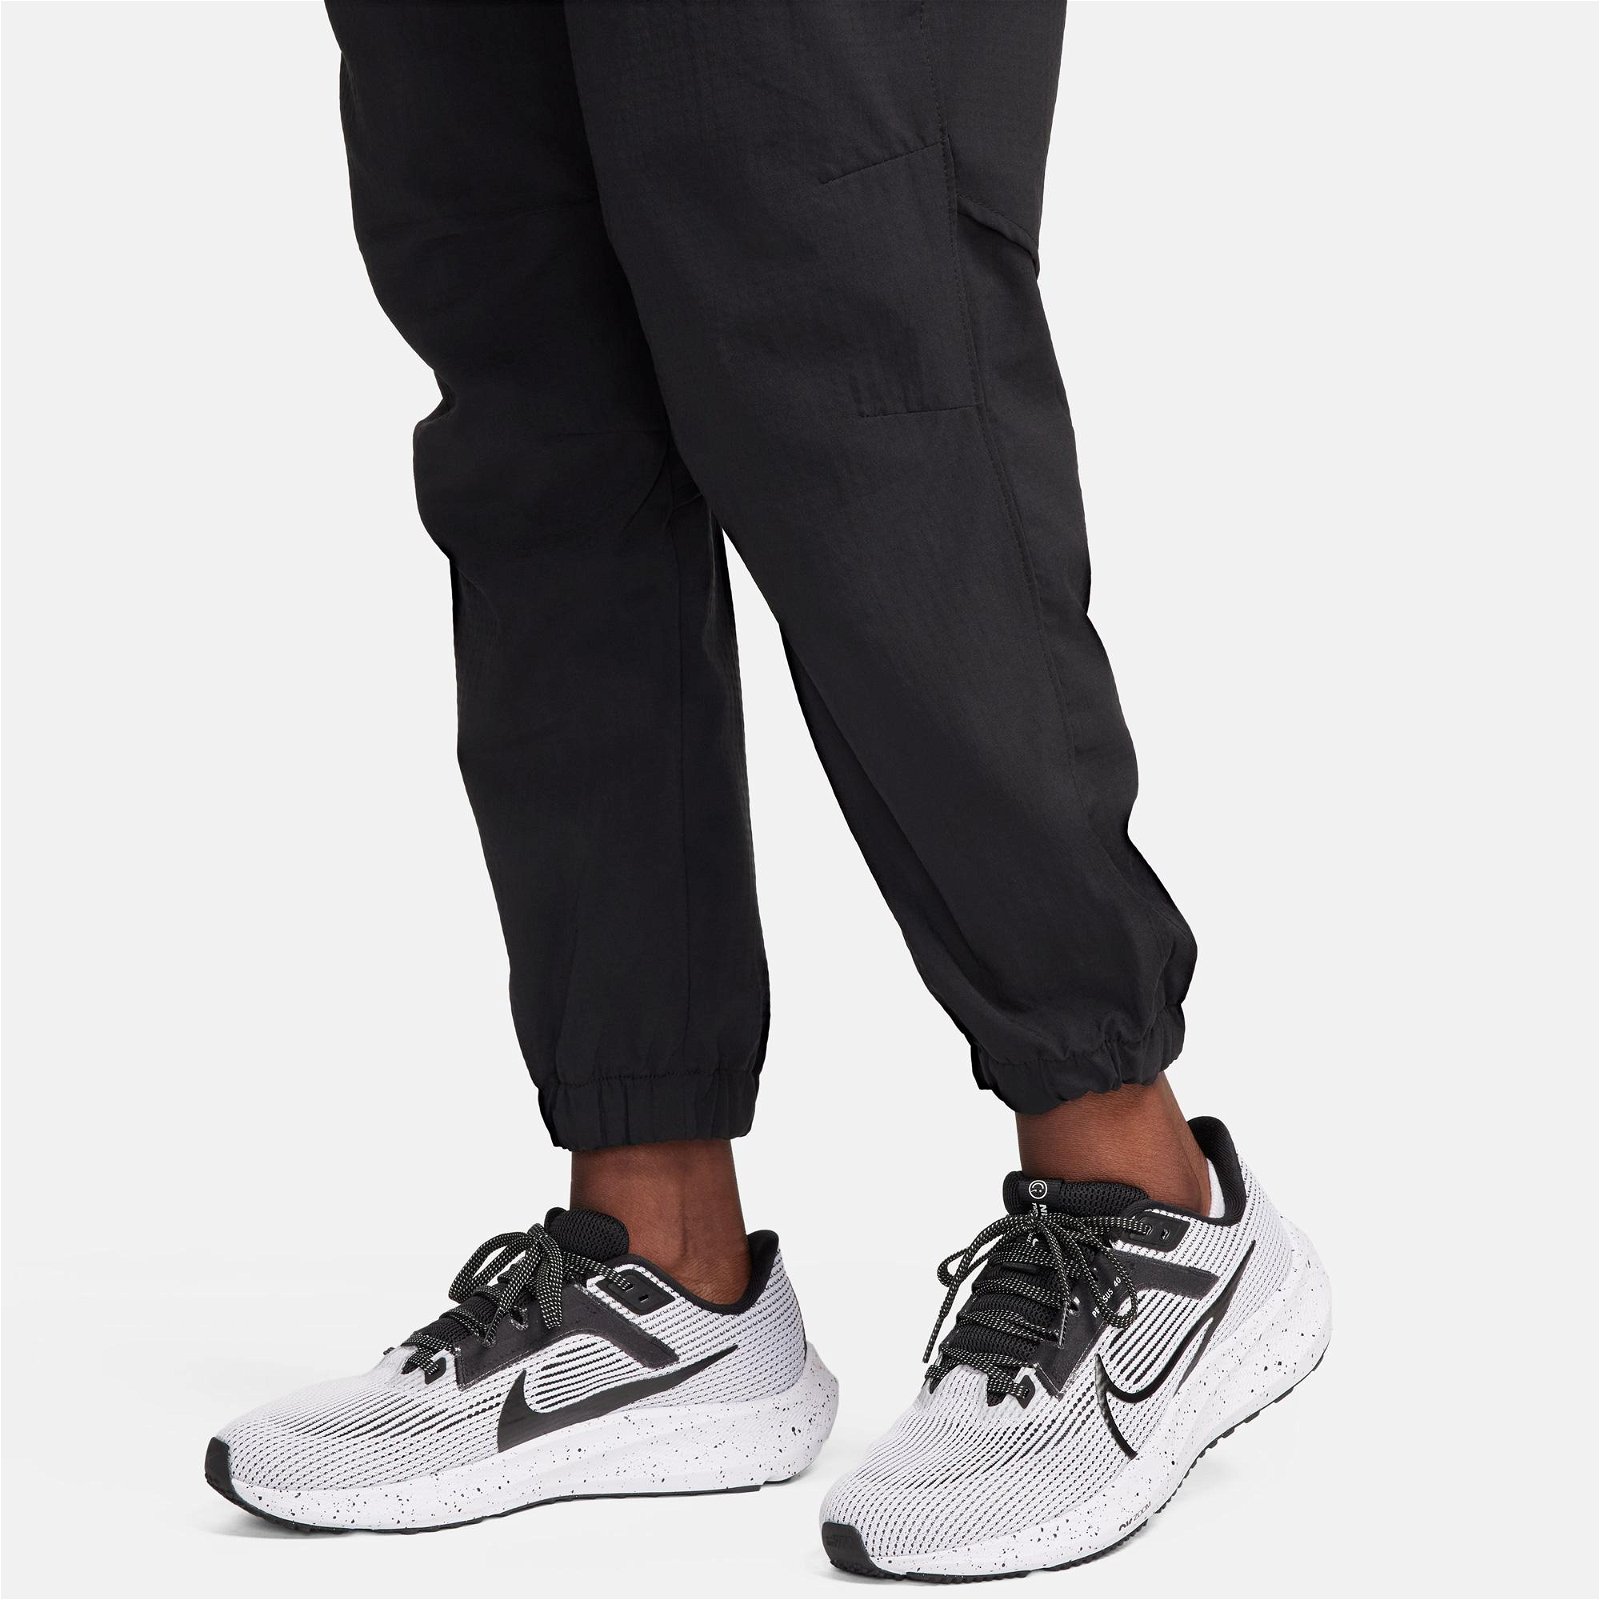 Nike Dri-FIT Fast Kadın Siyah Eşofman Altı